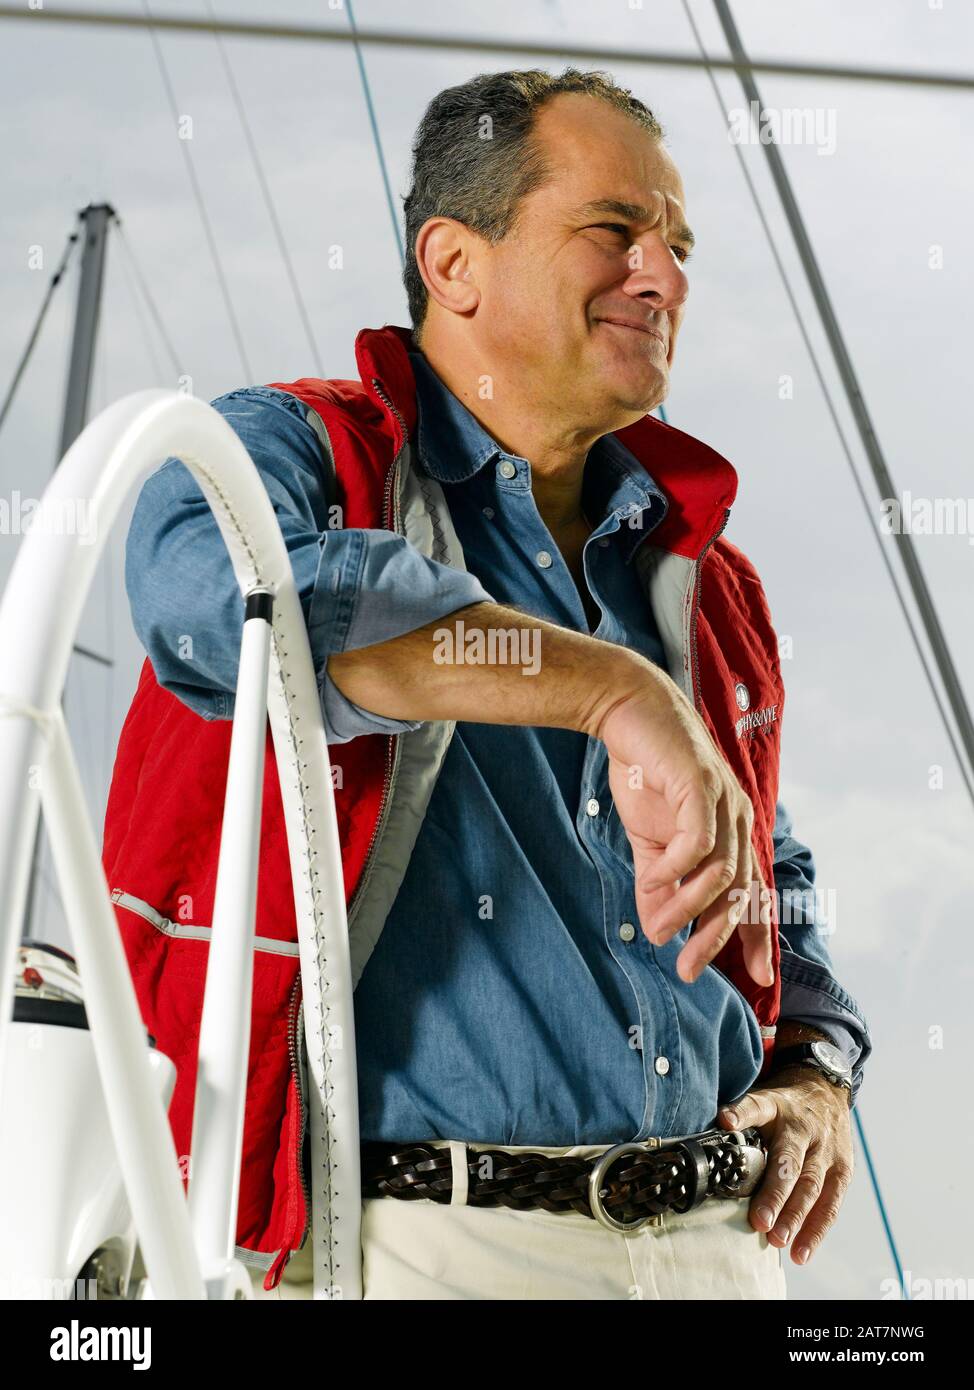 Leonardo Ferragamo, of the Italian family-owned fashion company "Salvatore  Ferragamo", pictured on his yacht, Porto di Scarlino, Grosseto province, Tu  Stock Photo - Alamy